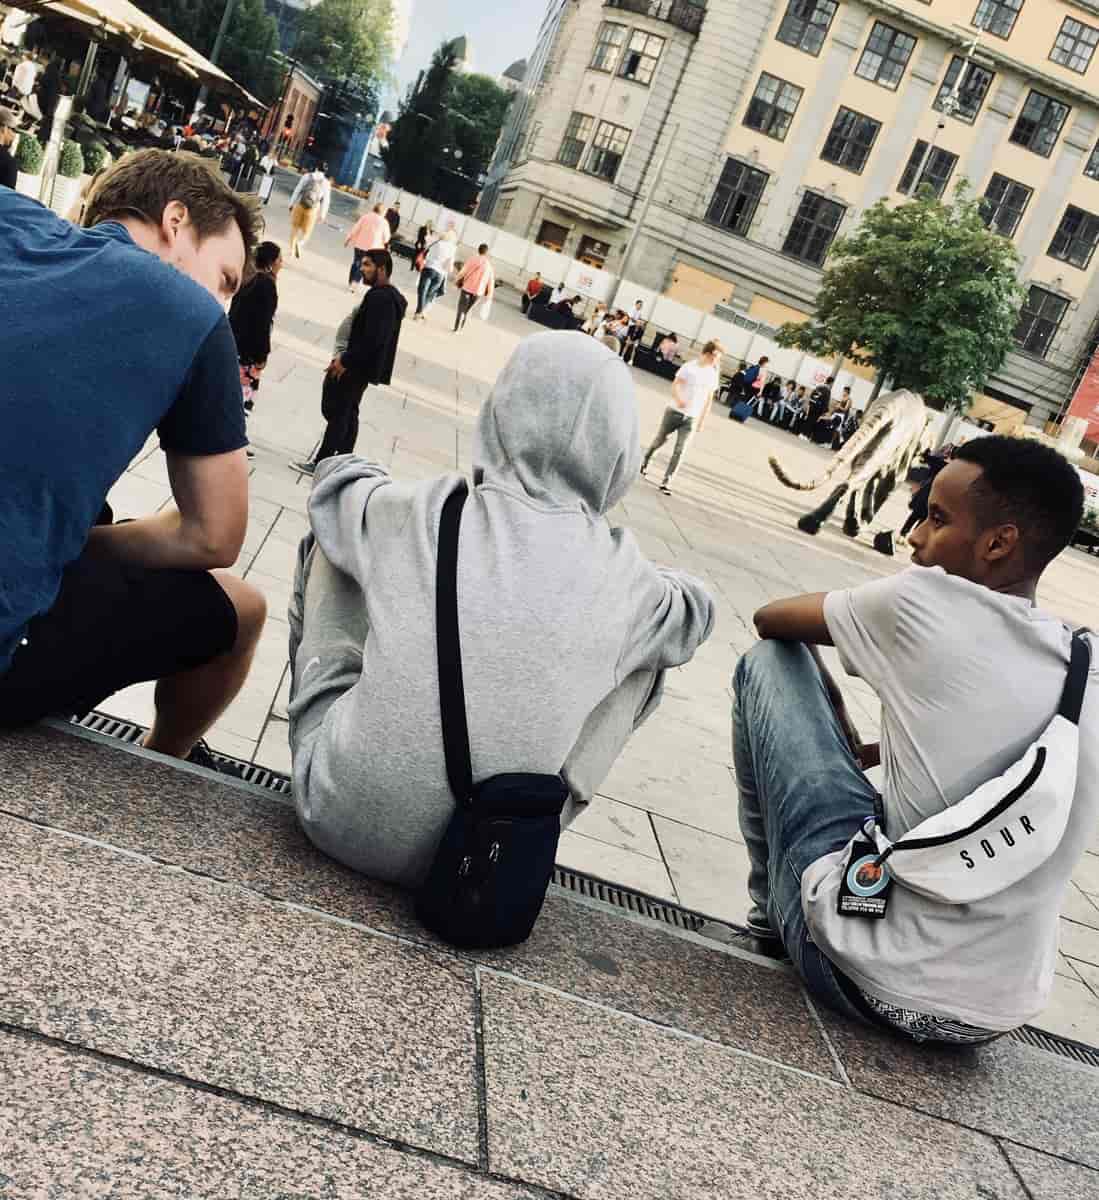 Oppsøkere i kontakt med ungdom i Oslo, 2018